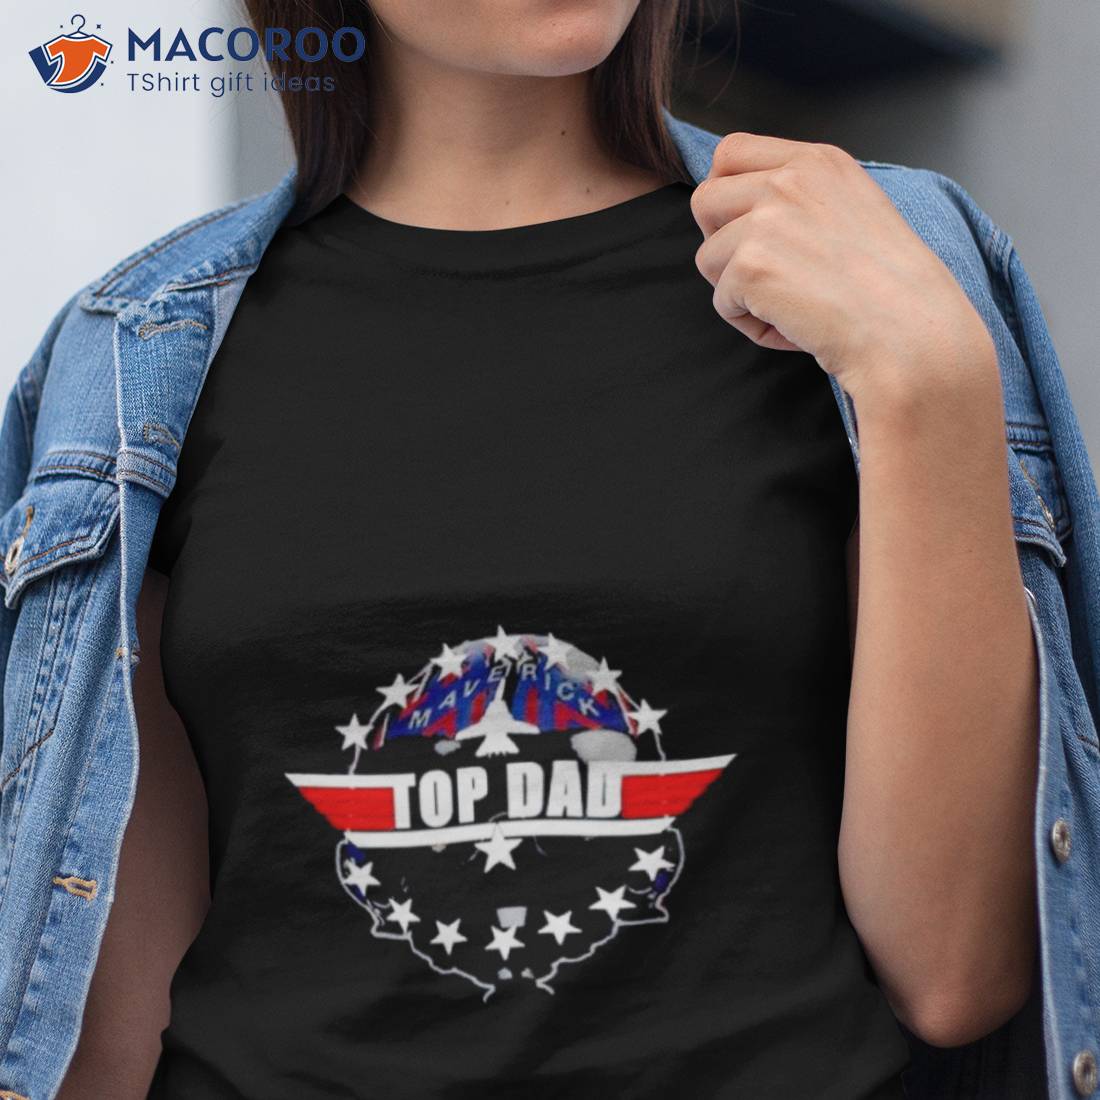 Top Gun Maverick Full Sleeve T-Shirt